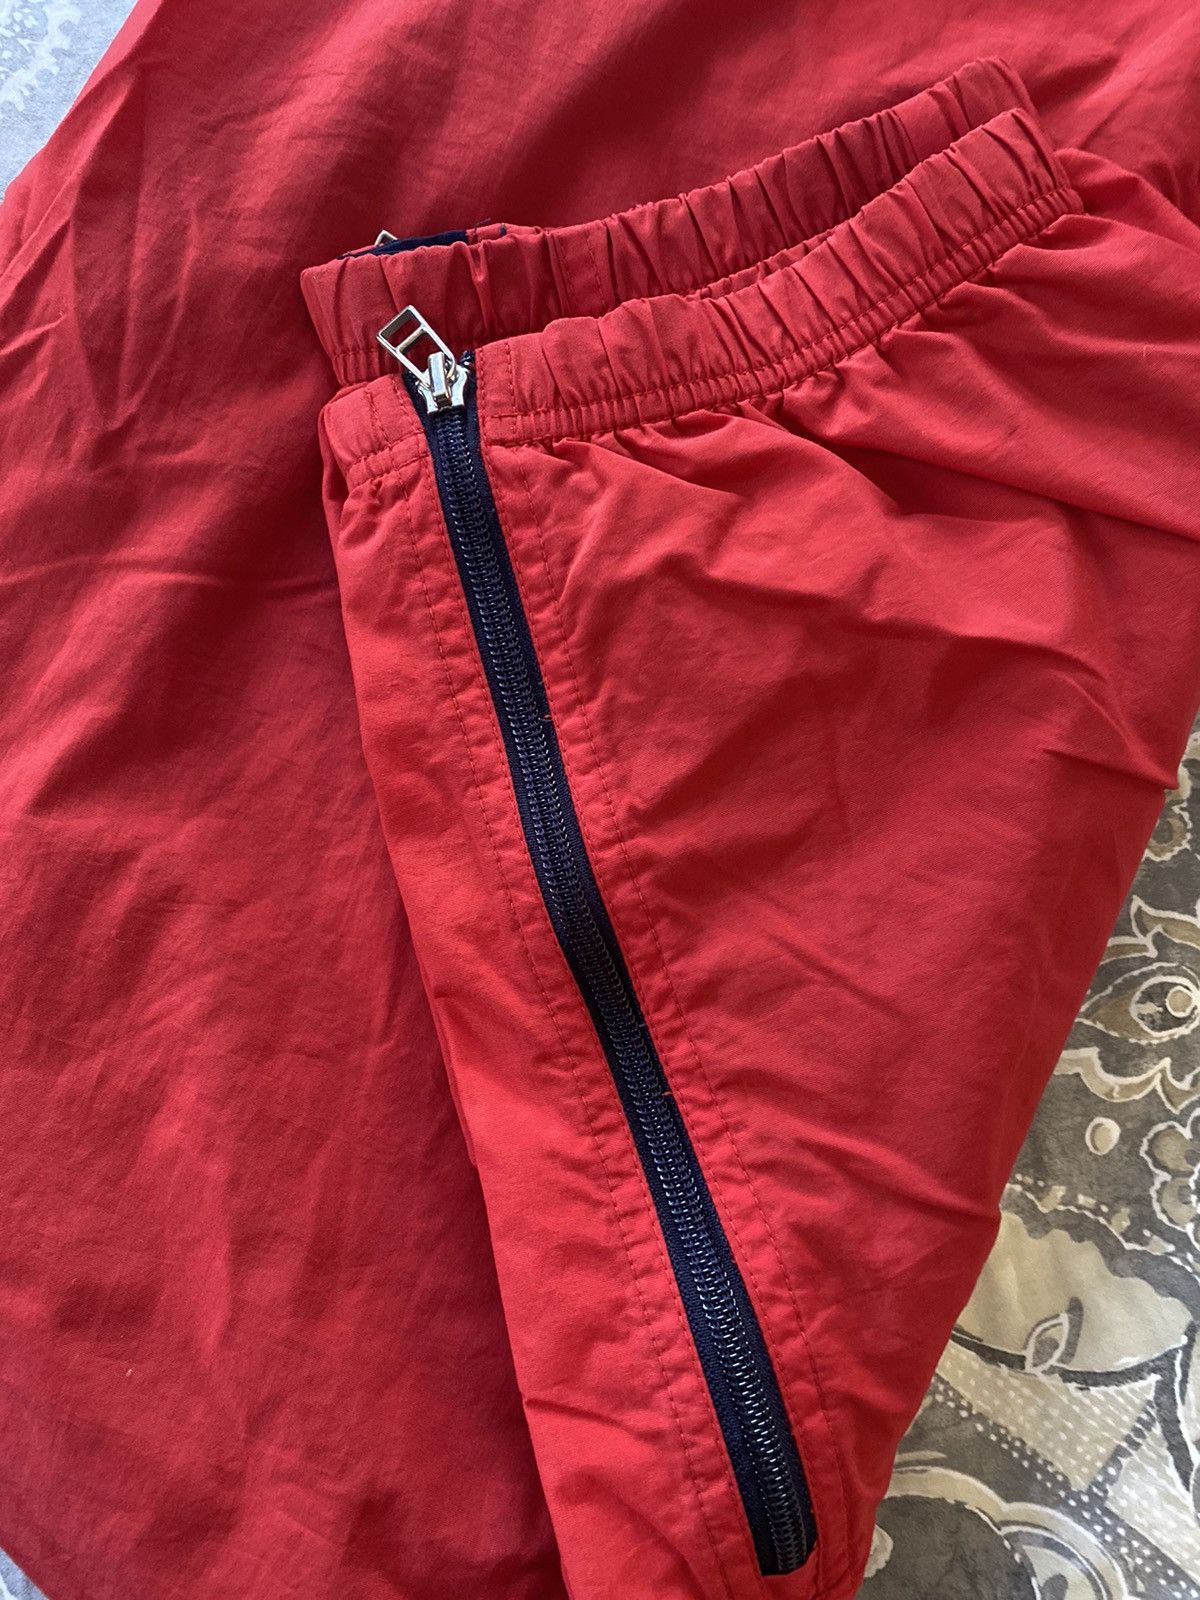 Polo Ralph Lauren Polo sport swishy pants vintage Size US 32 / EU 48 - 6 Thumbnail